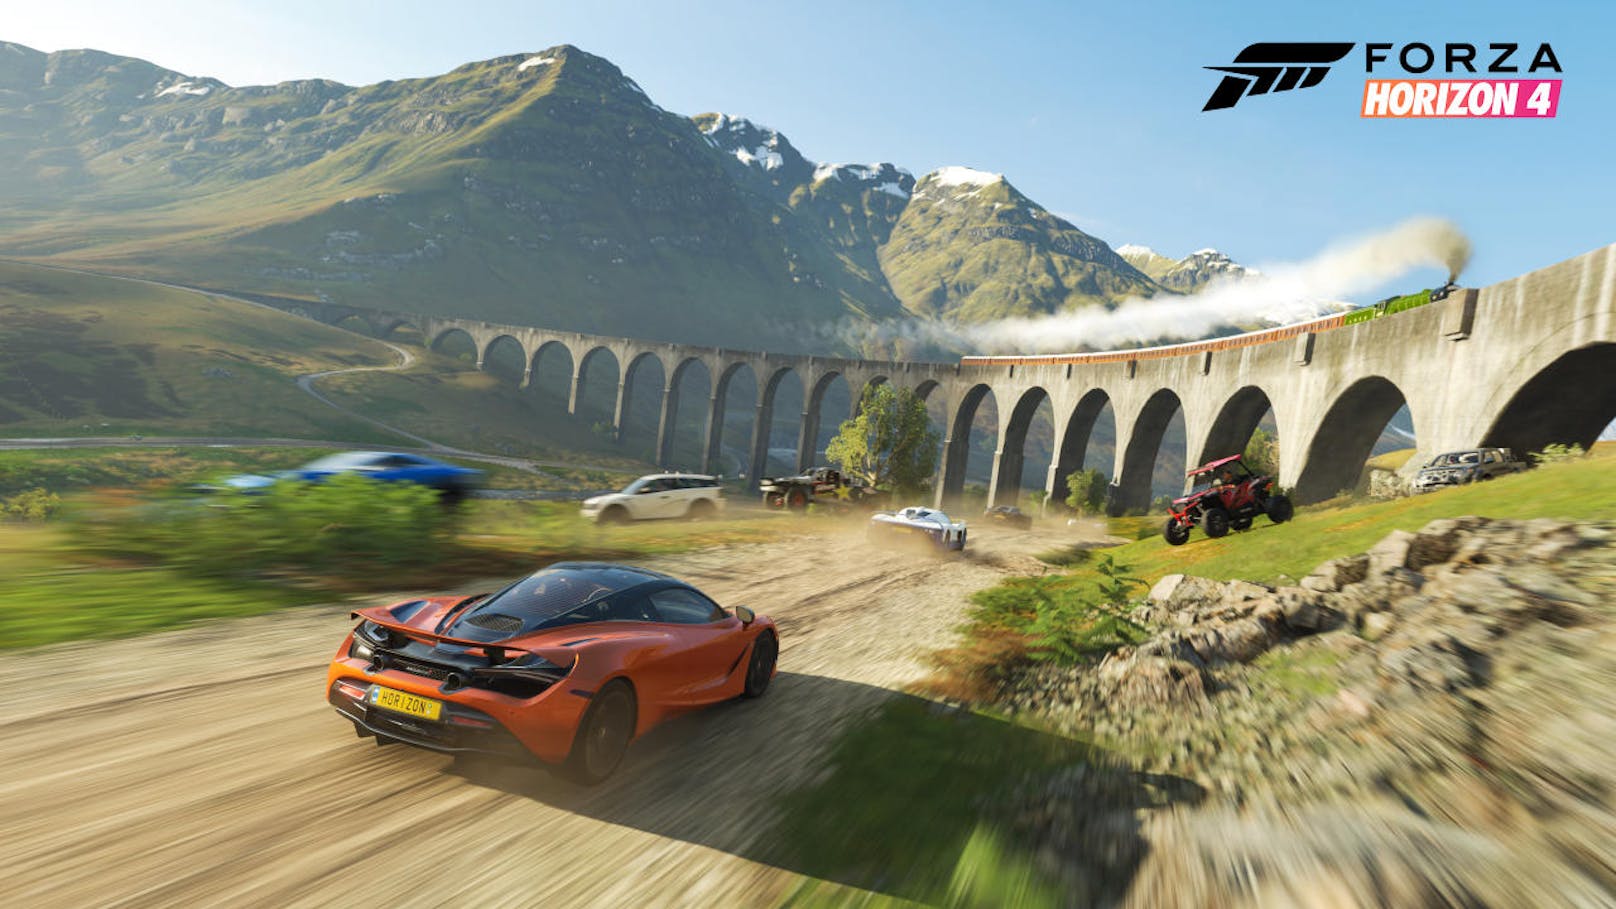 Forza Horizon ist seit jeher das Forza "for the rest of us". Die Forza Motorsport-Hauptserie strebt nach knallharter Simulation, während das Spinoff eher als Arcade-Racer bezeichnet werden kann.